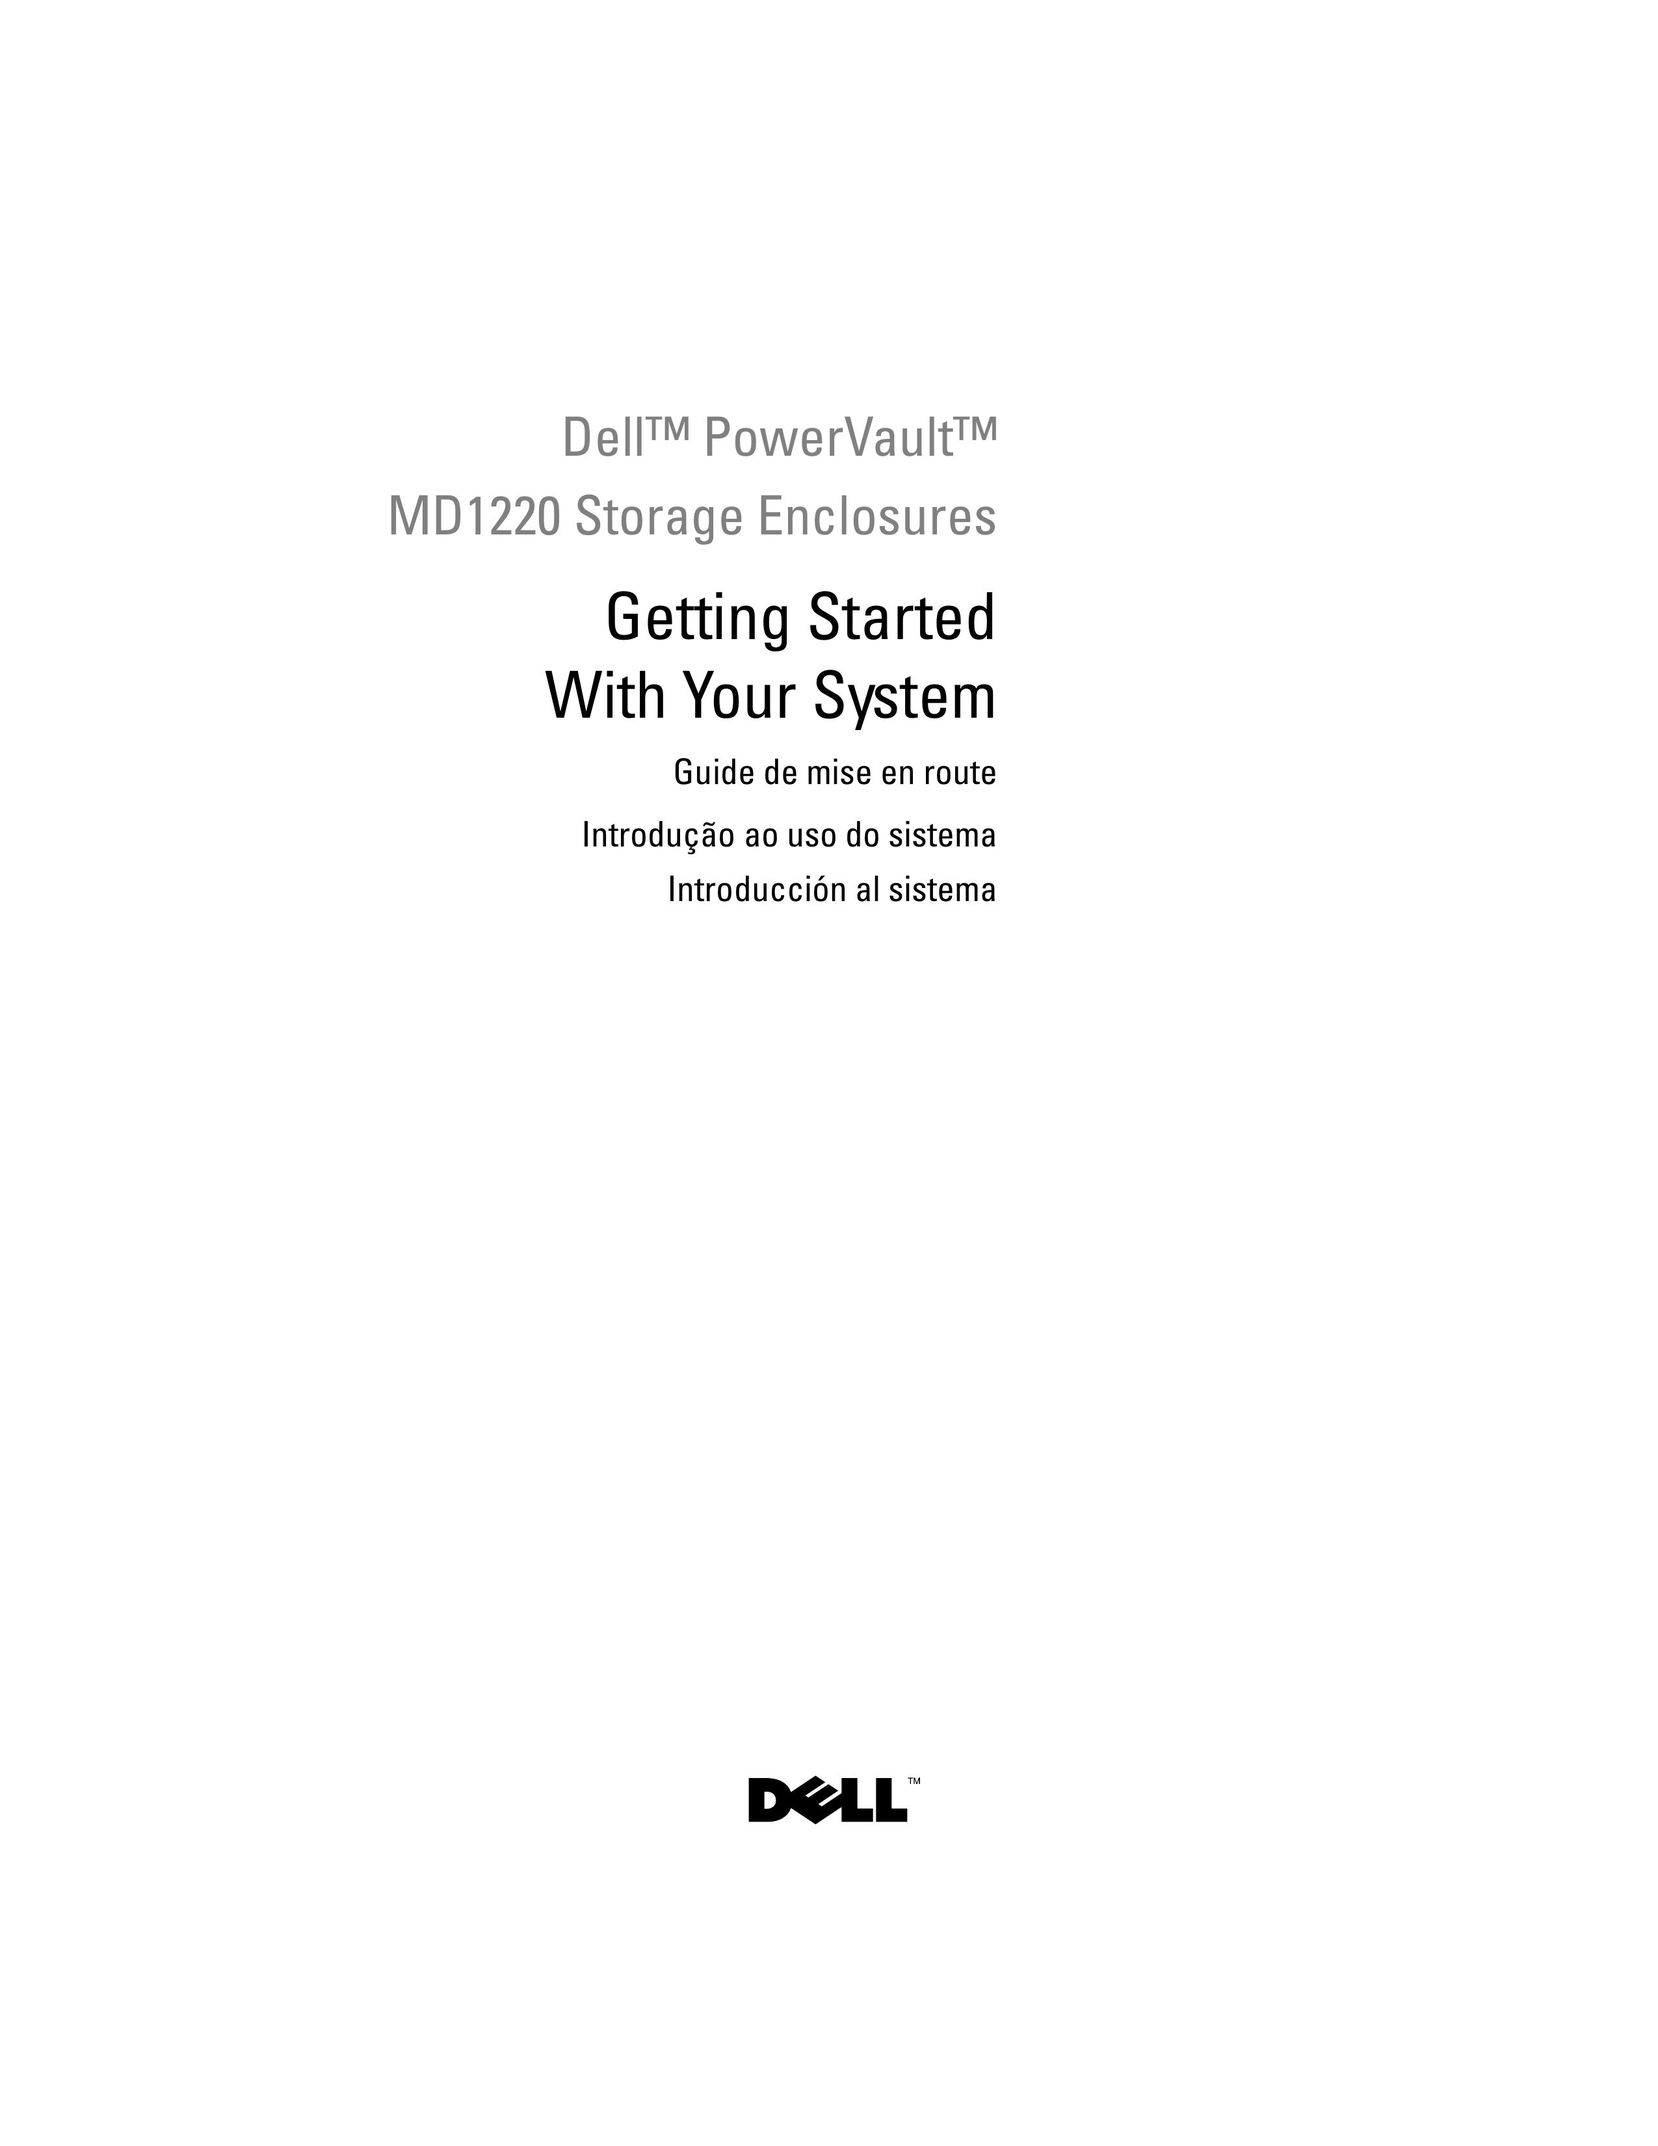 Dell E04J Computer Drive User Manual